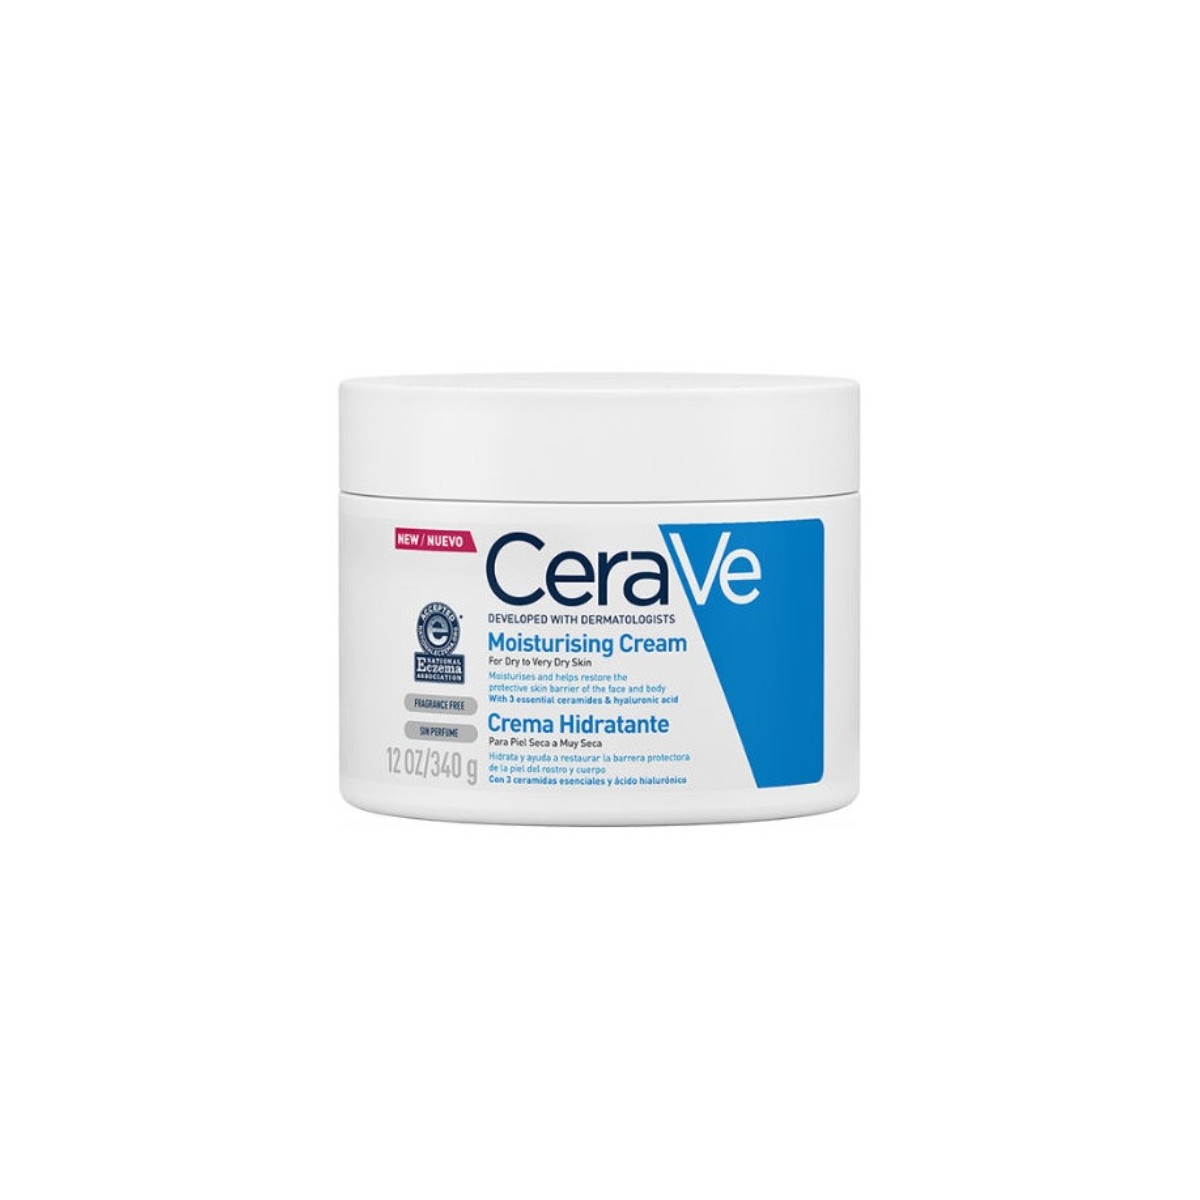 cerave-crema-hidratante-340-g